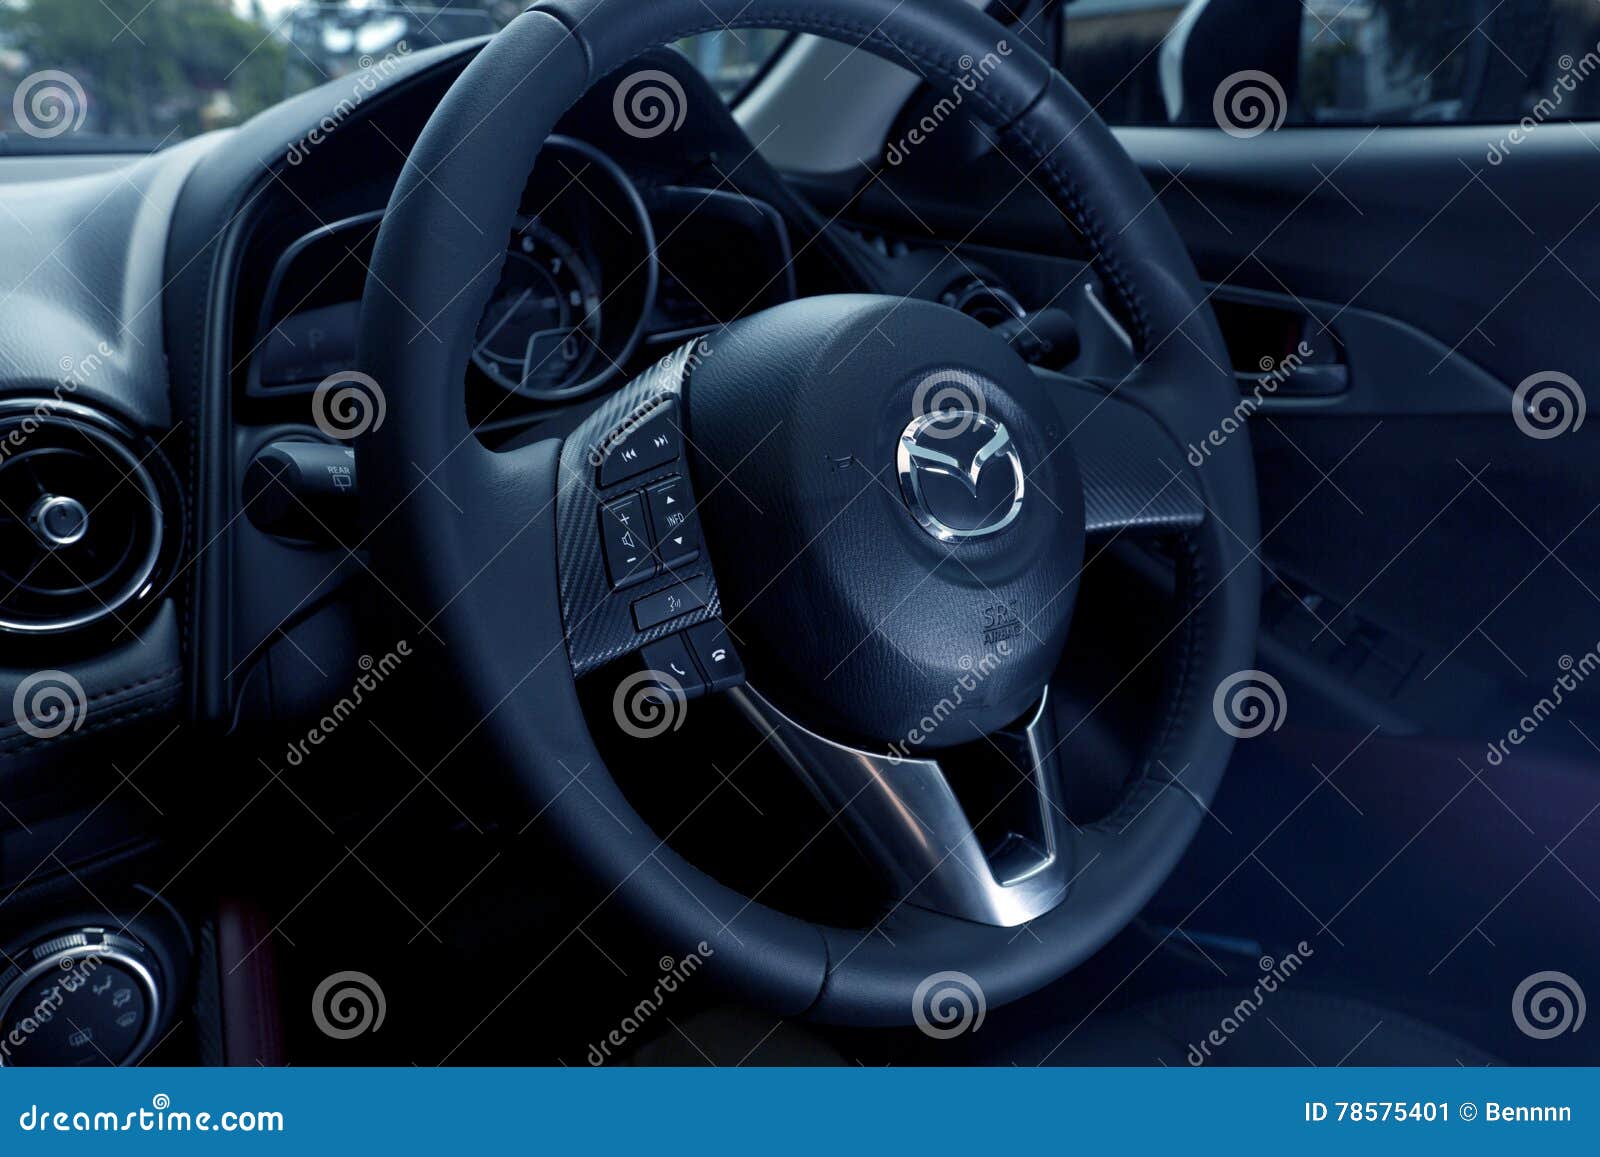 Interior Design Of Mazda Cx 3 Dashboard Editorial Photo